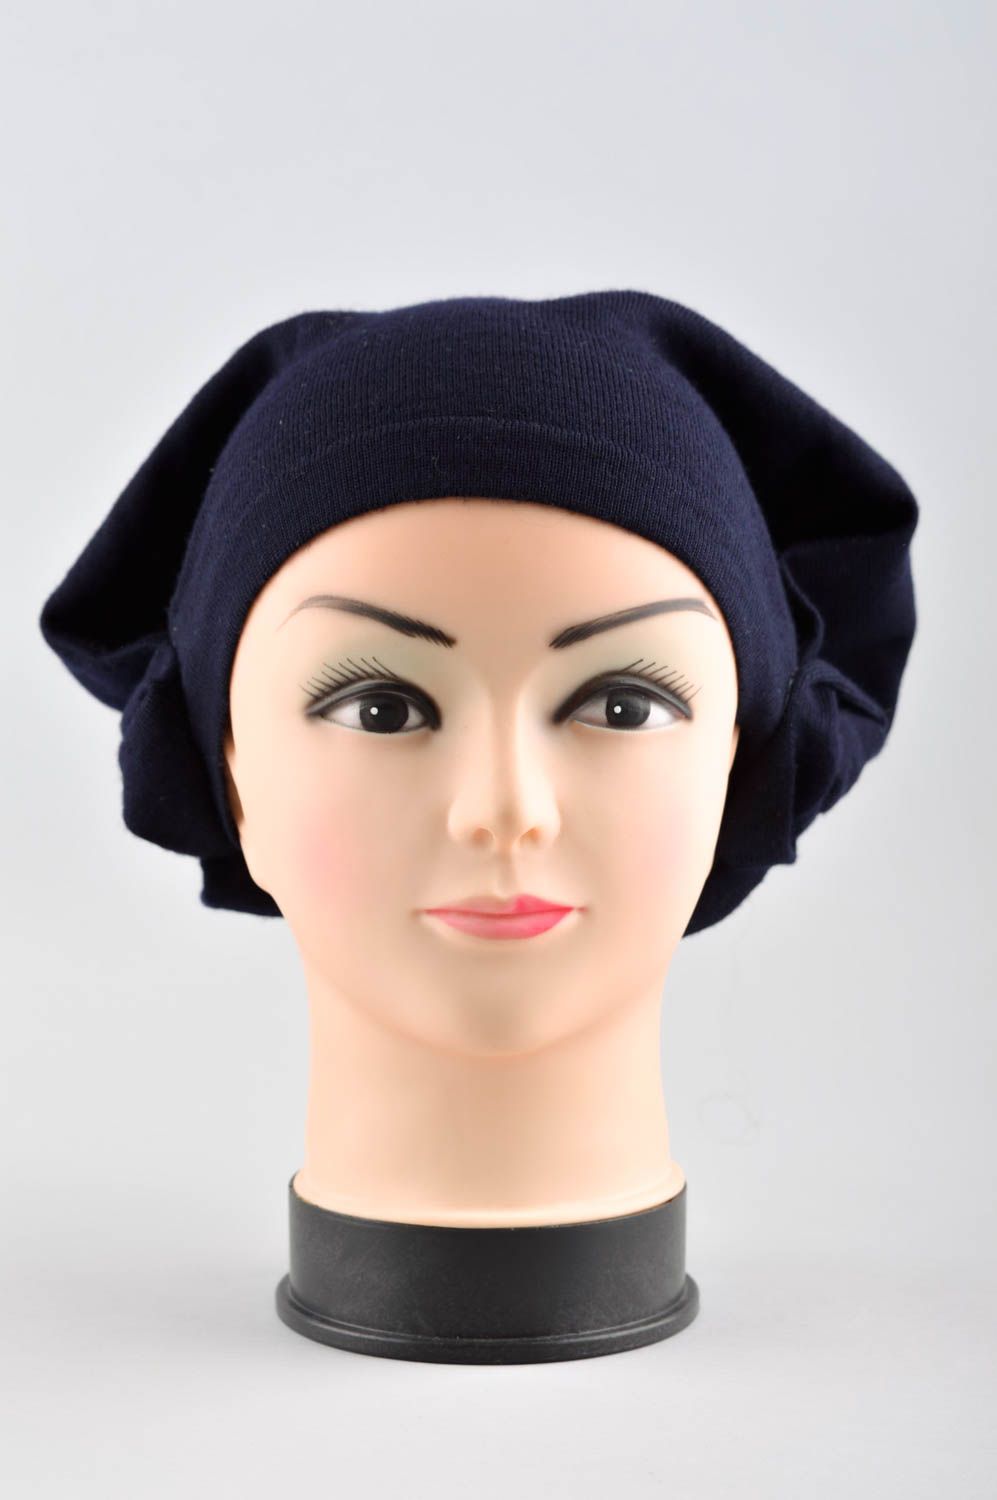 Handmade women hat winter hat winter accessories for girls elegant warm hat photo 1